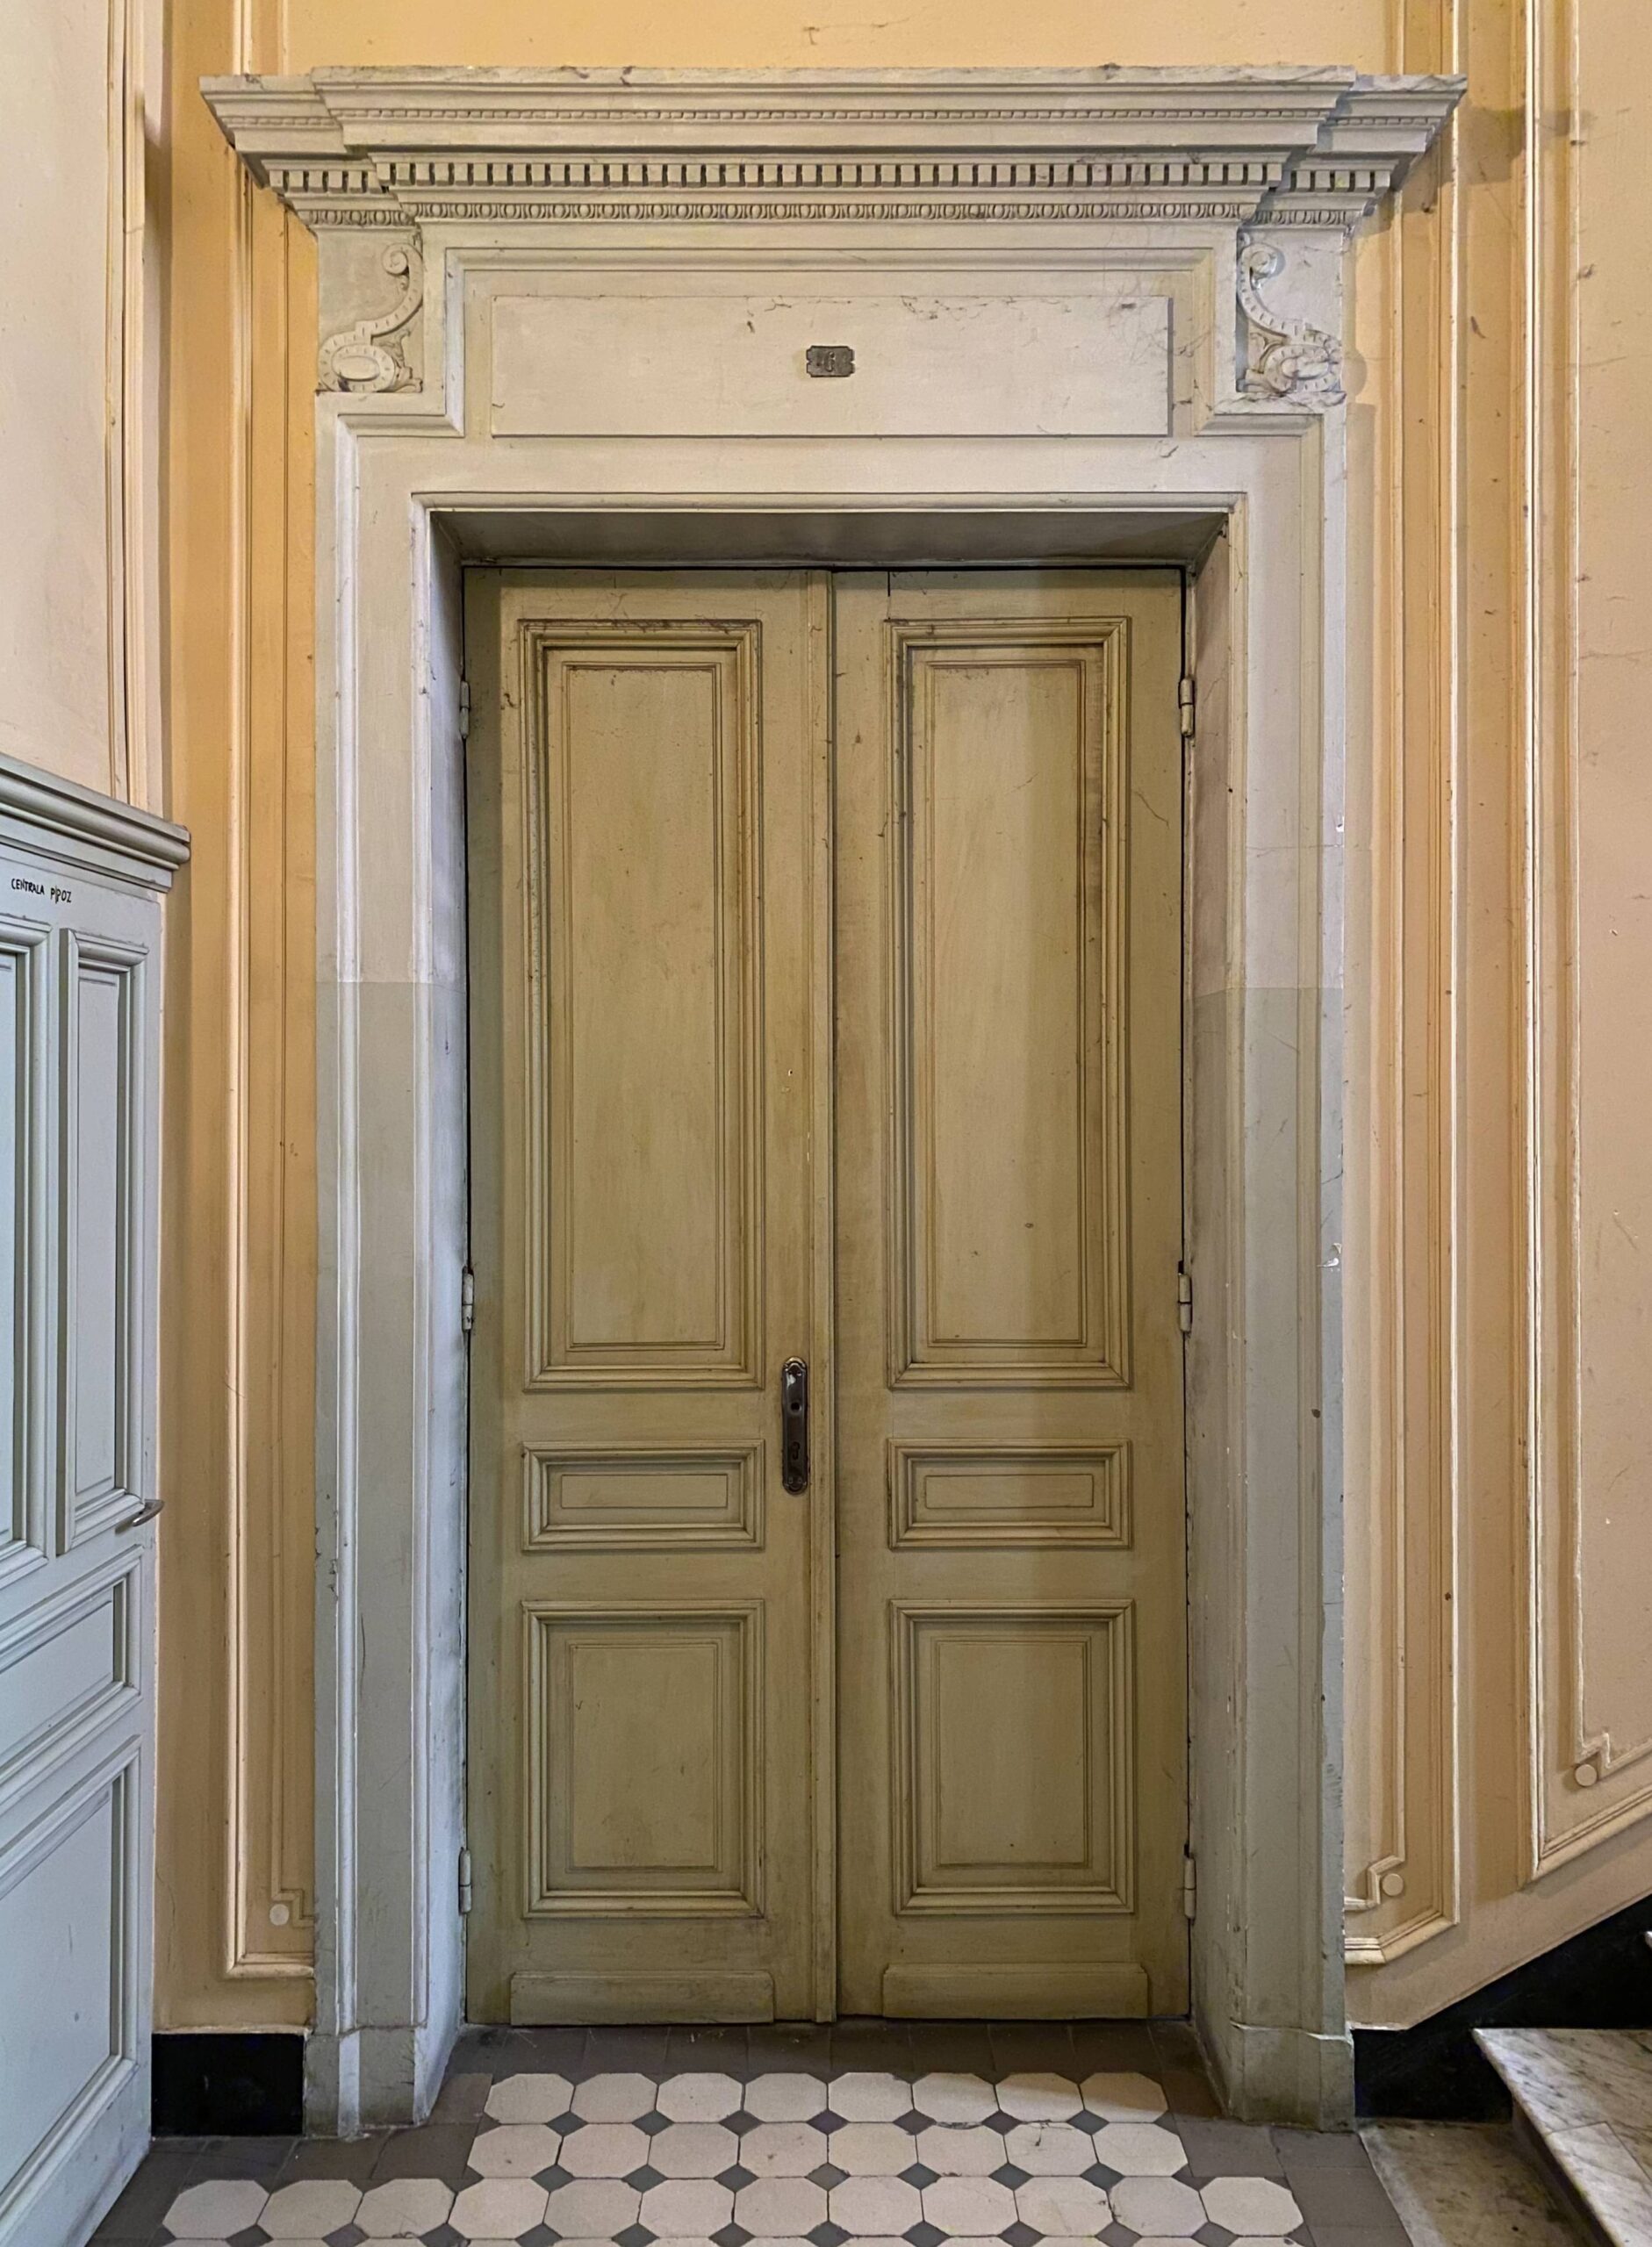 Dom frontowy. Klatka główna. Drzwi do mieszkania. Fot. Wojciech Kmieć 2022 r., źródło: AOD III.